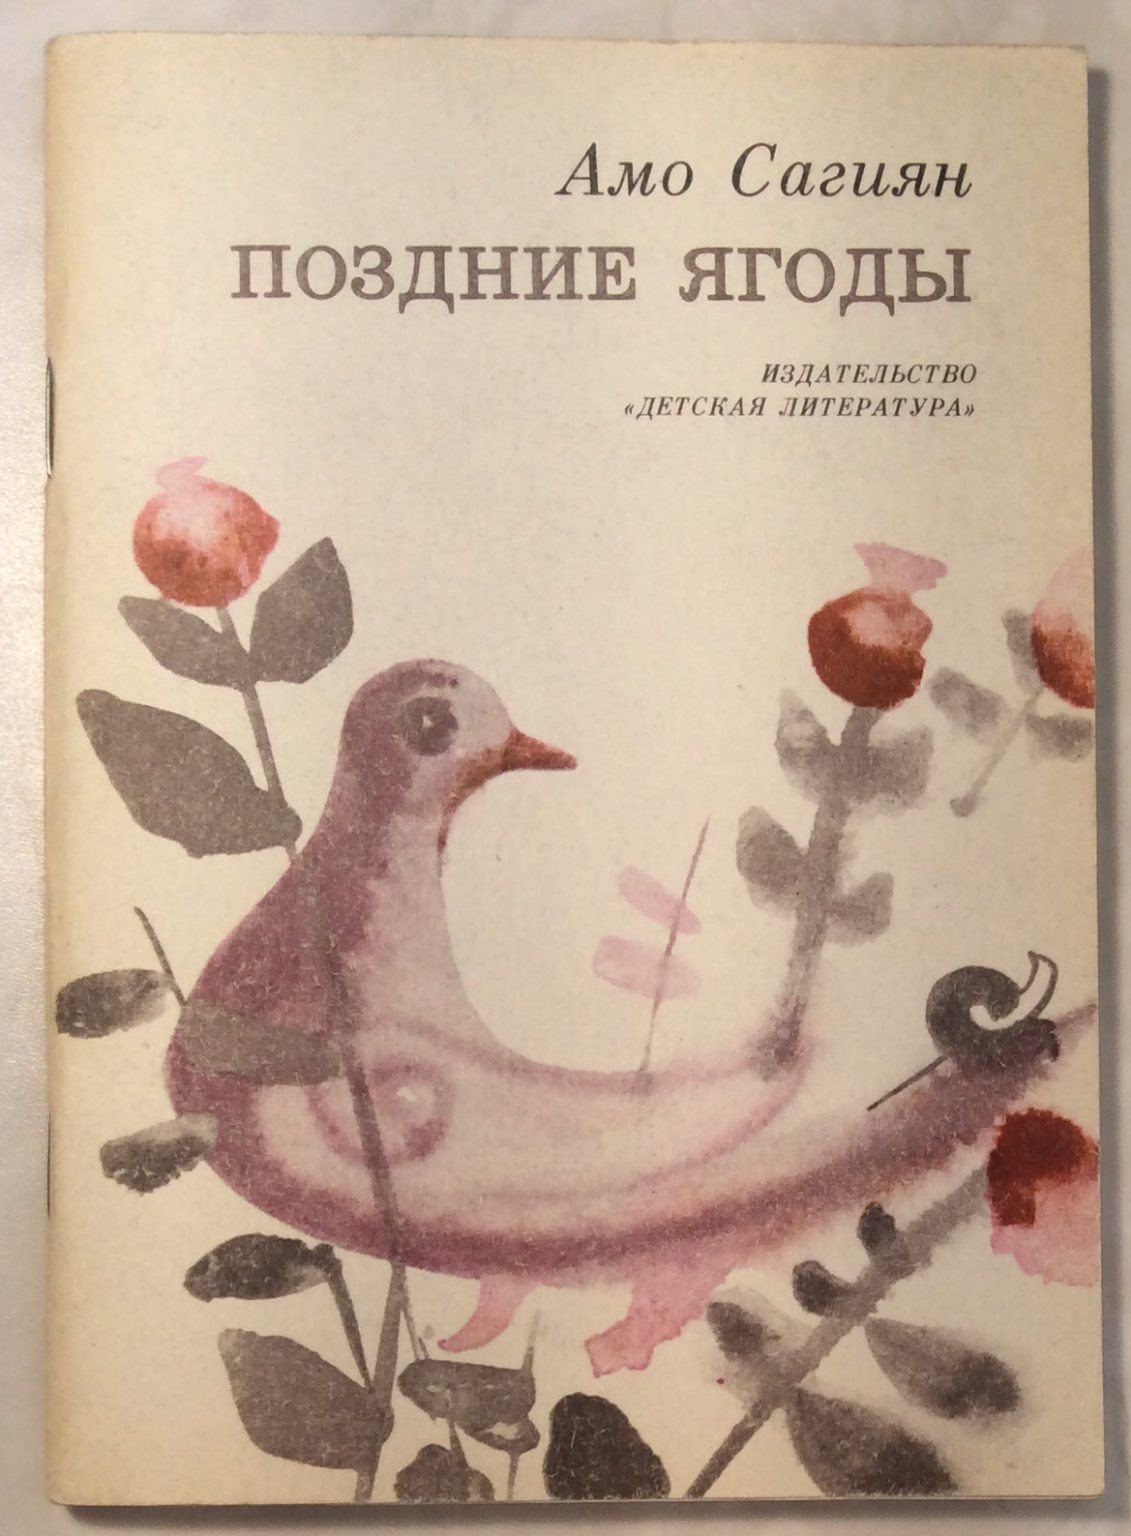 Обложка чудесные ягоды Издательство детская литература